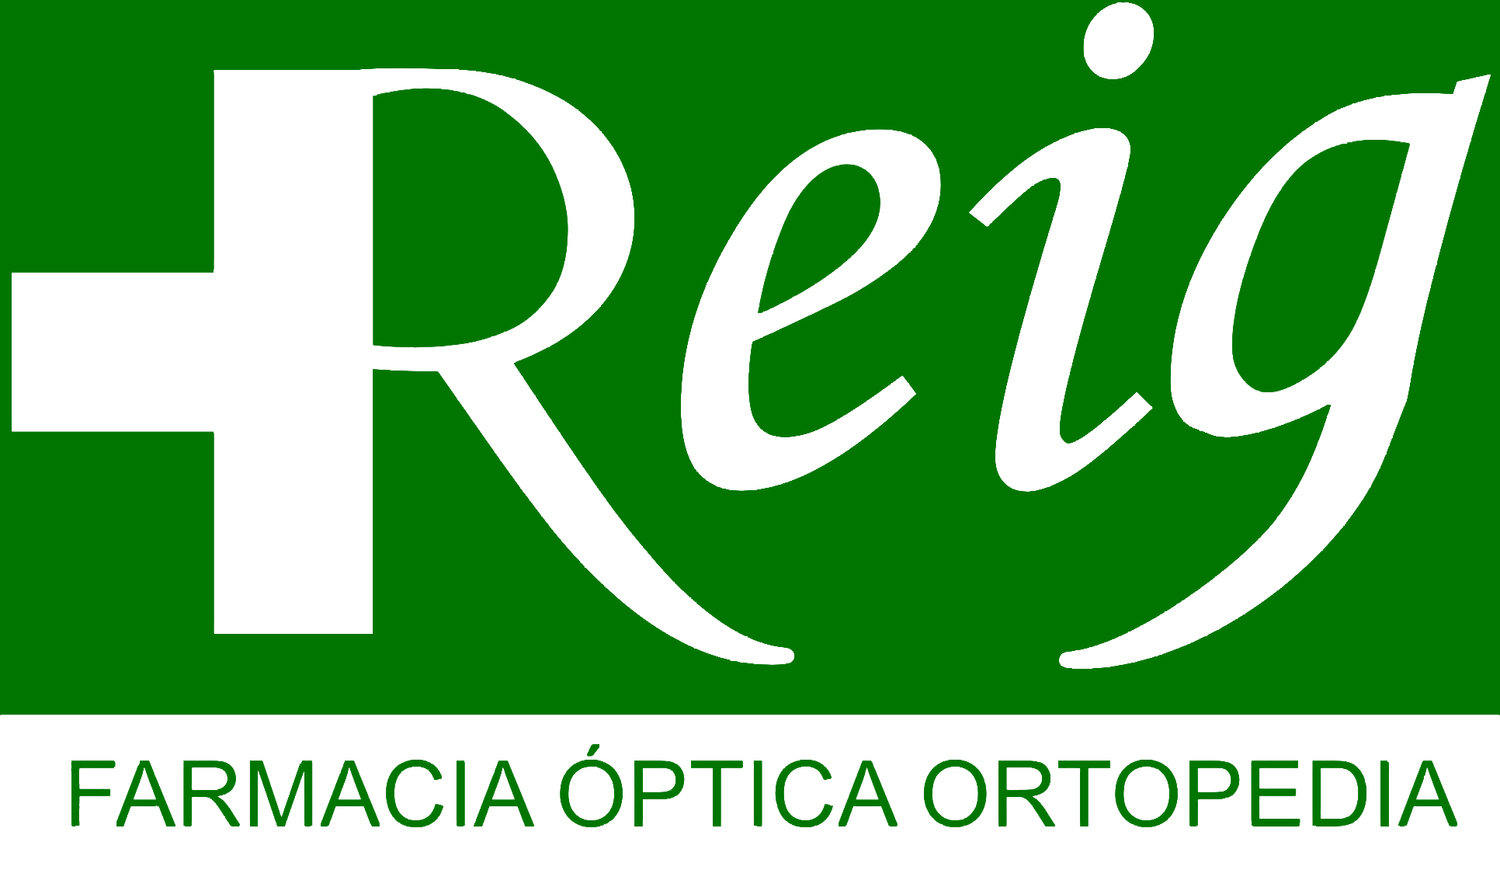 Farmacia Óptica Ortopedia Reig